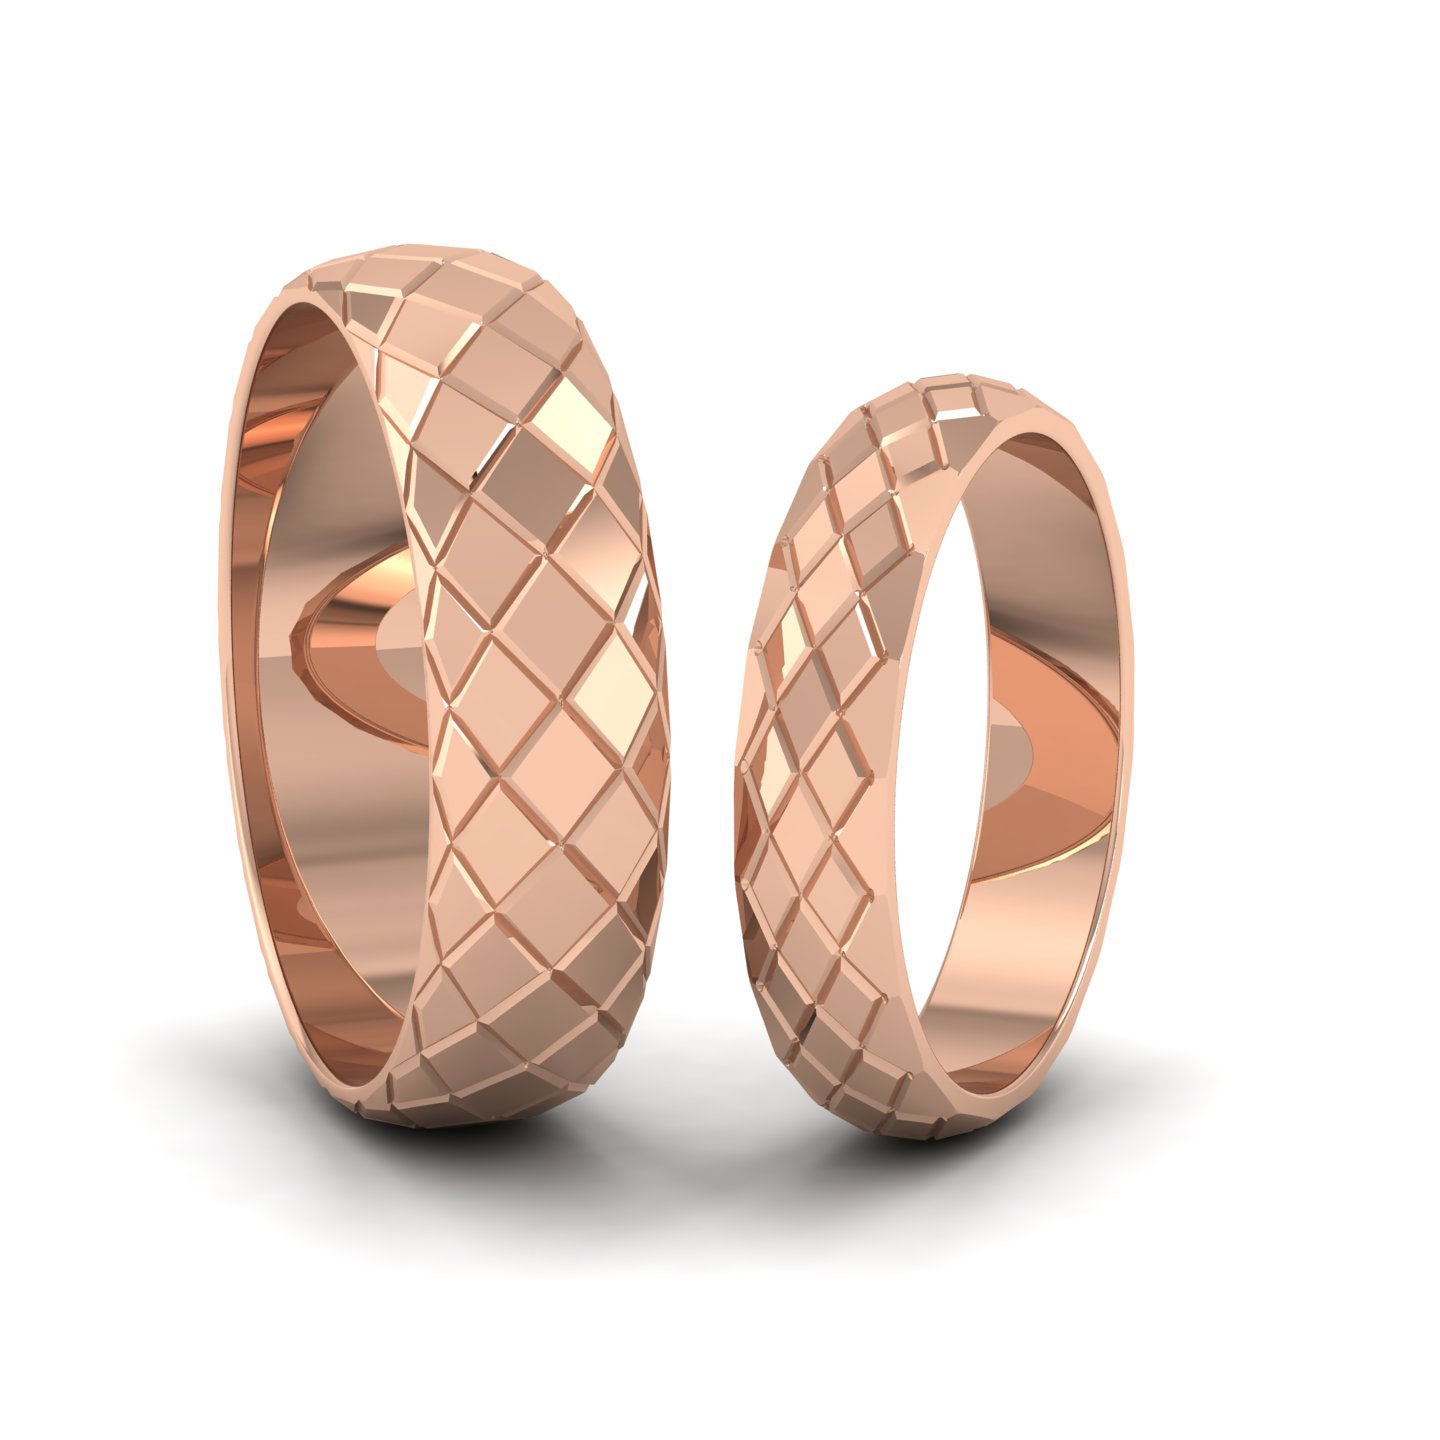 Facet And Line Harlequin Design 18ct Rose Gold 6mm Wedding Ring